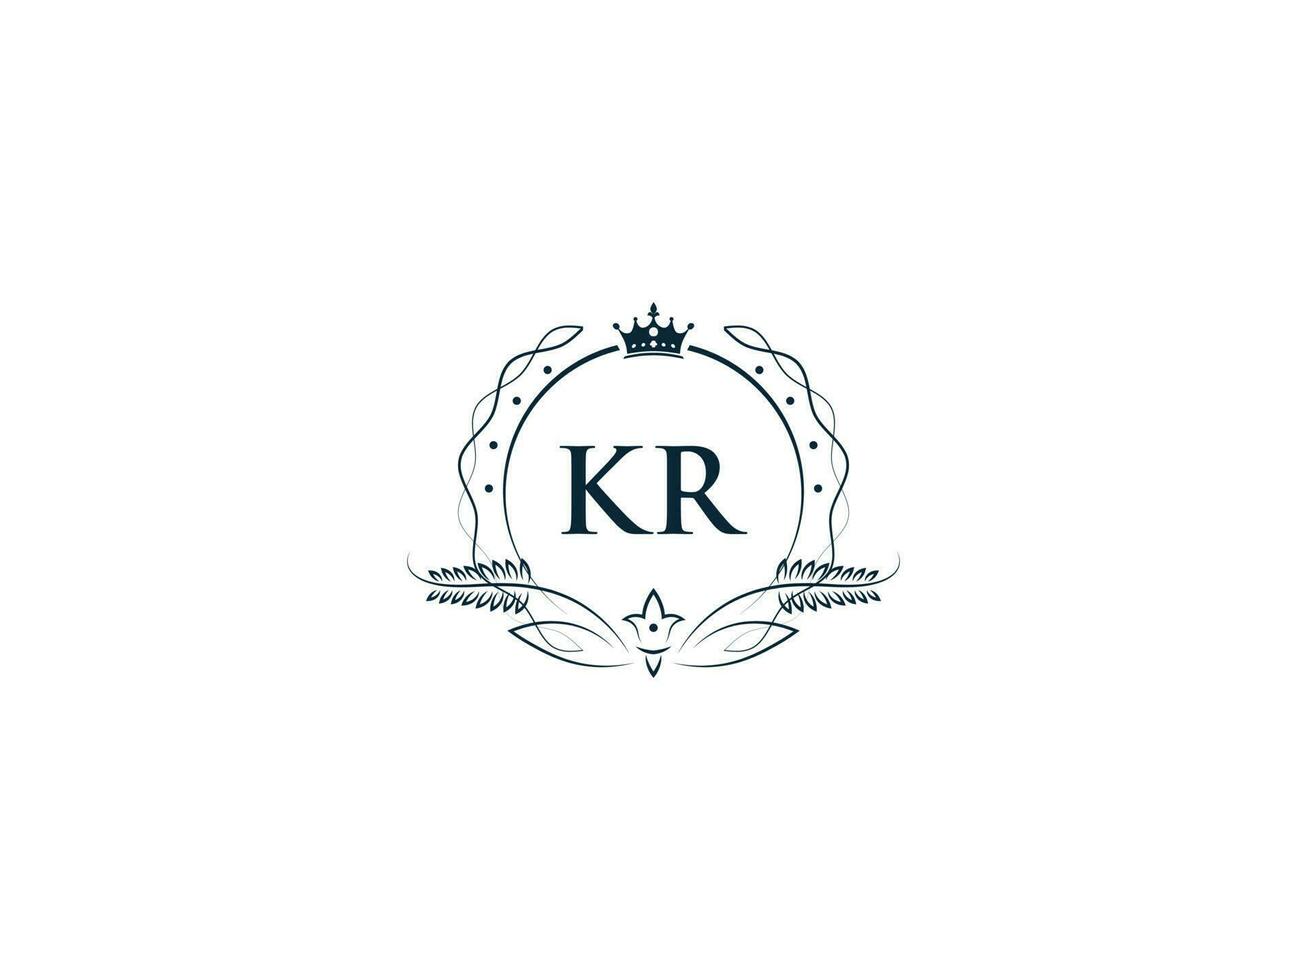 alfabet kroon kr vrouwelijk logo elementen, eerste luxe kr rk brief logo sjabloon vector